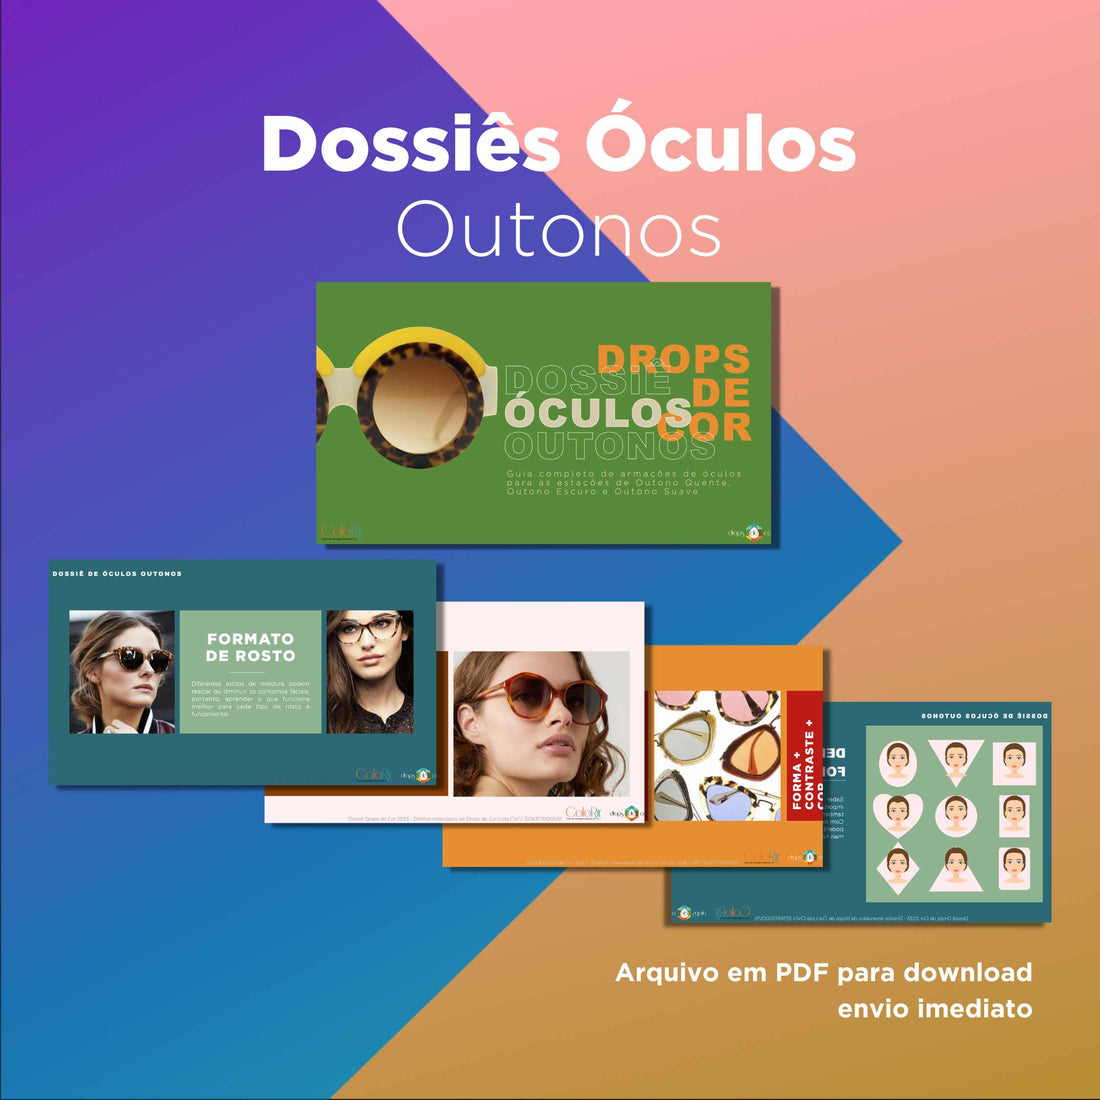 Dossiê Digital Óculos Outonos - Português